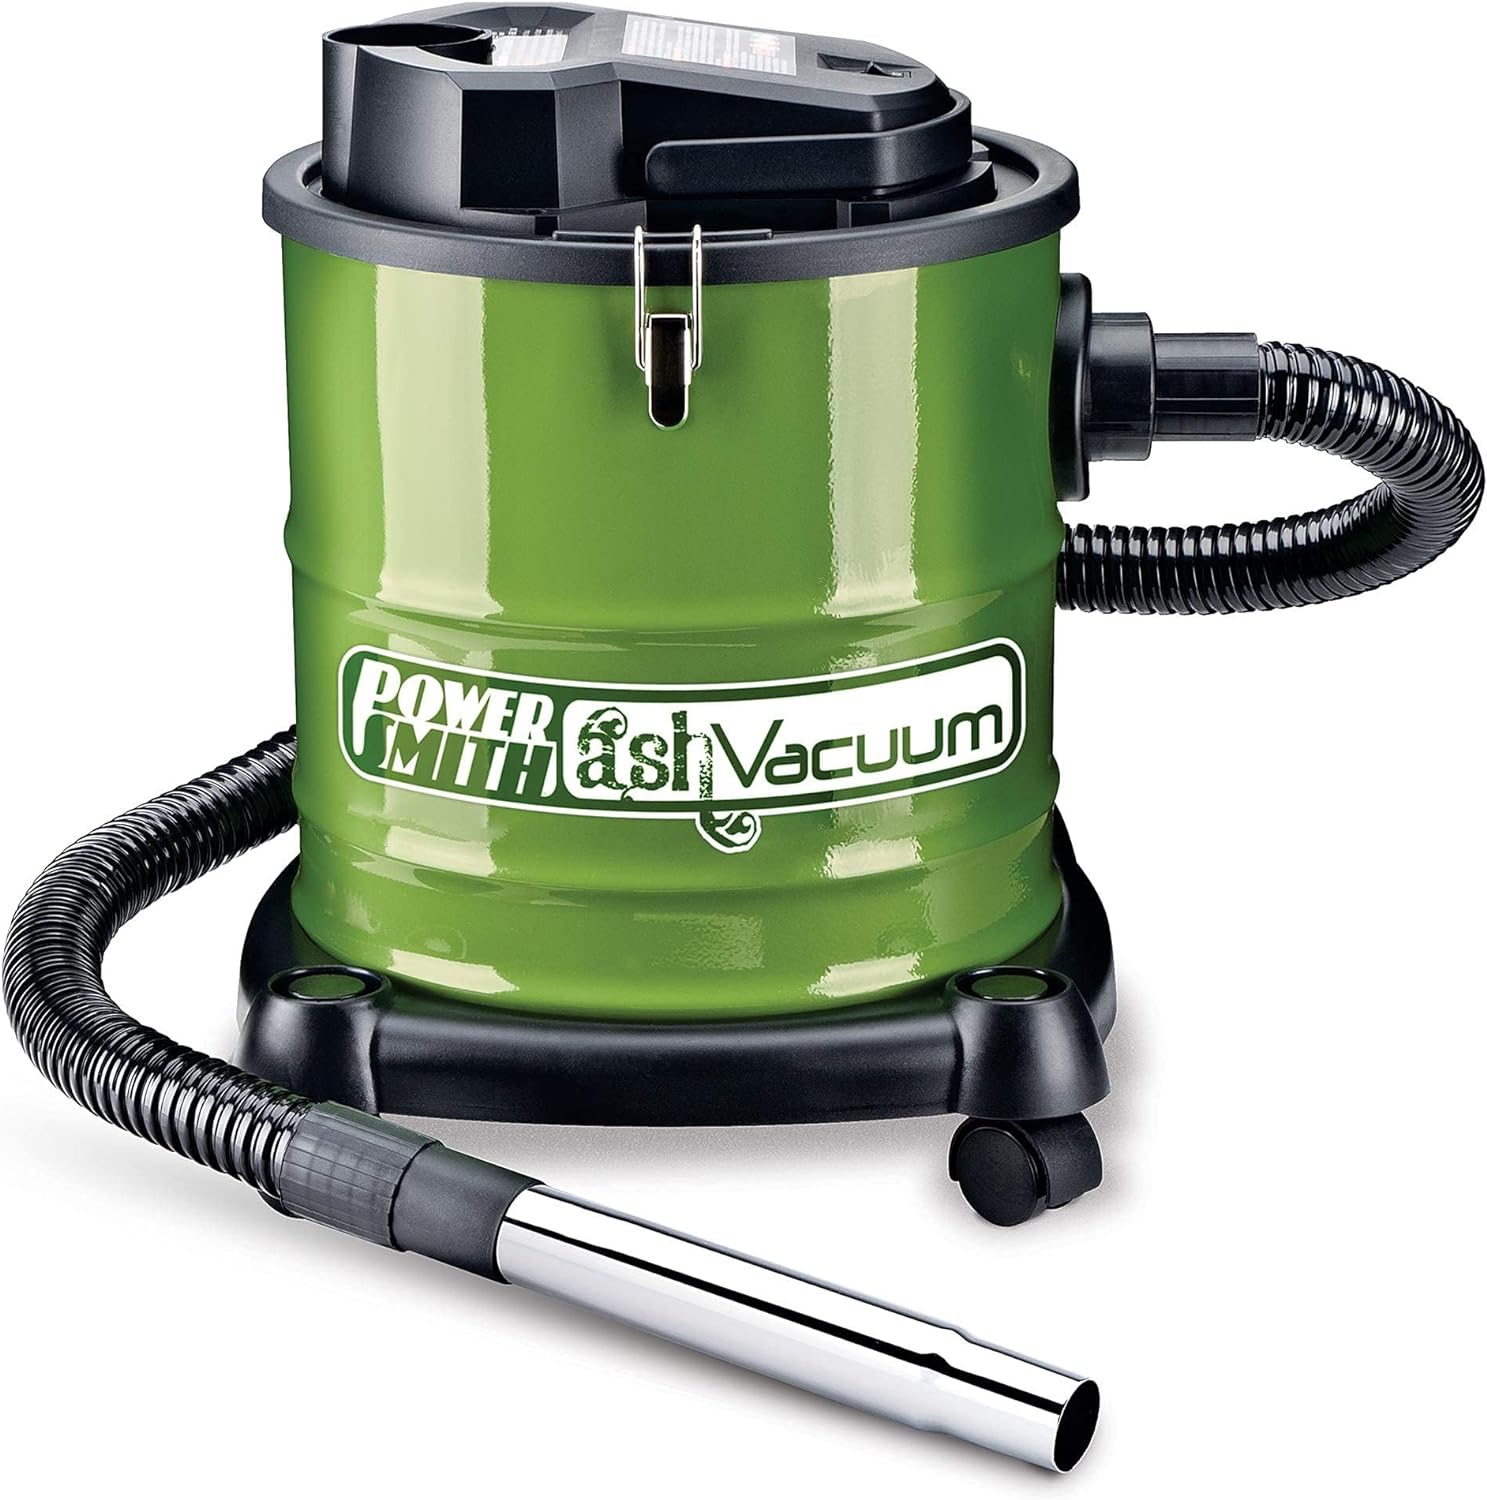 PowerSmith Ash Vacuum PAVC101